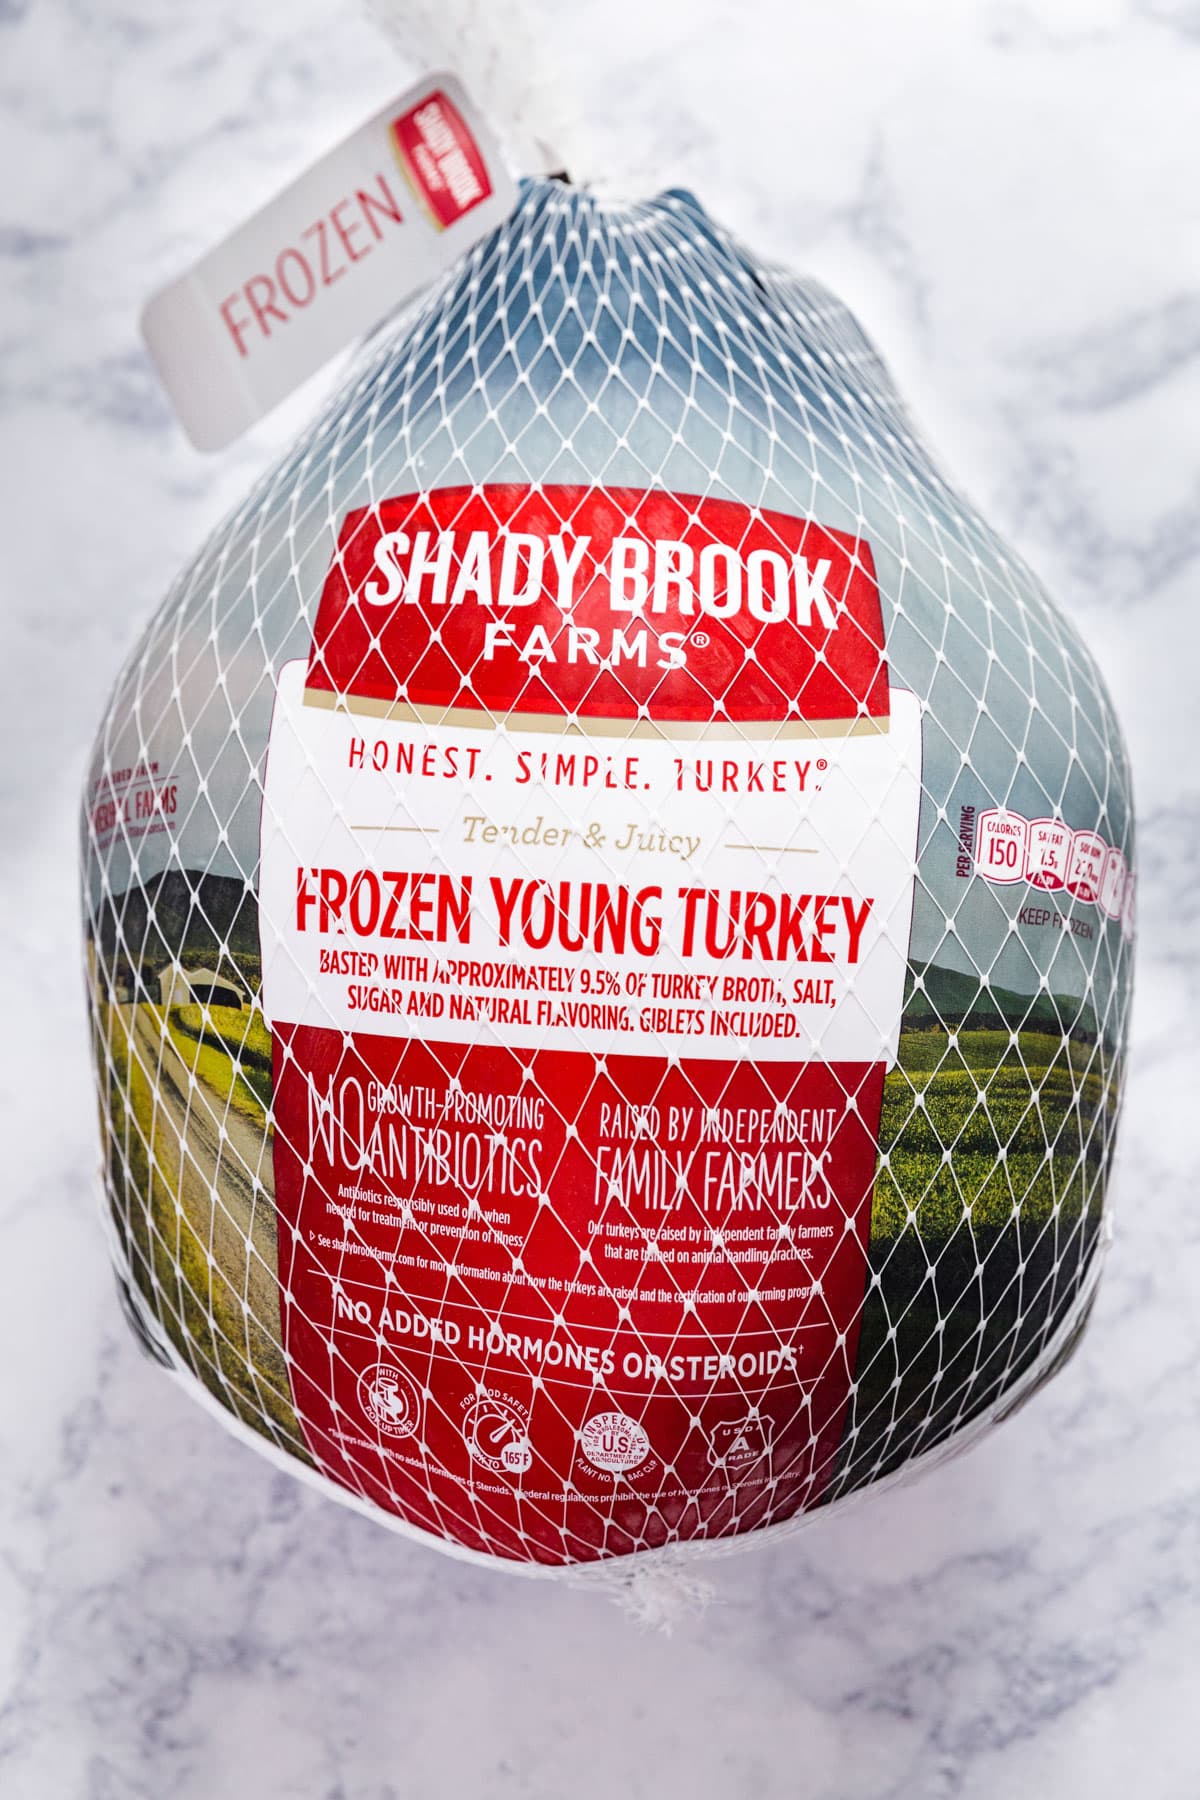 A whole turkey in it's packaging.